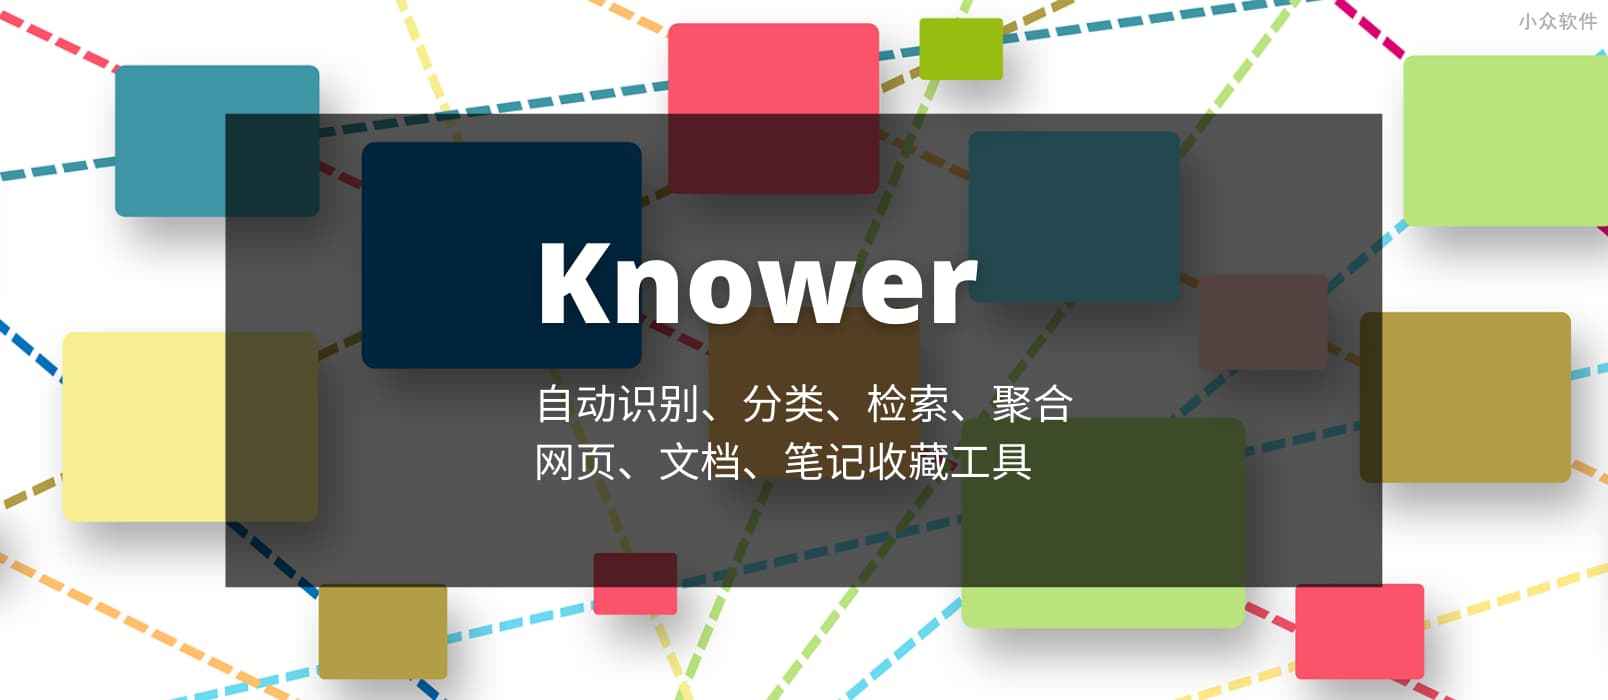 Knower – 能自动识别、提炼、检索、聚合的网络书签、文档收藏工具